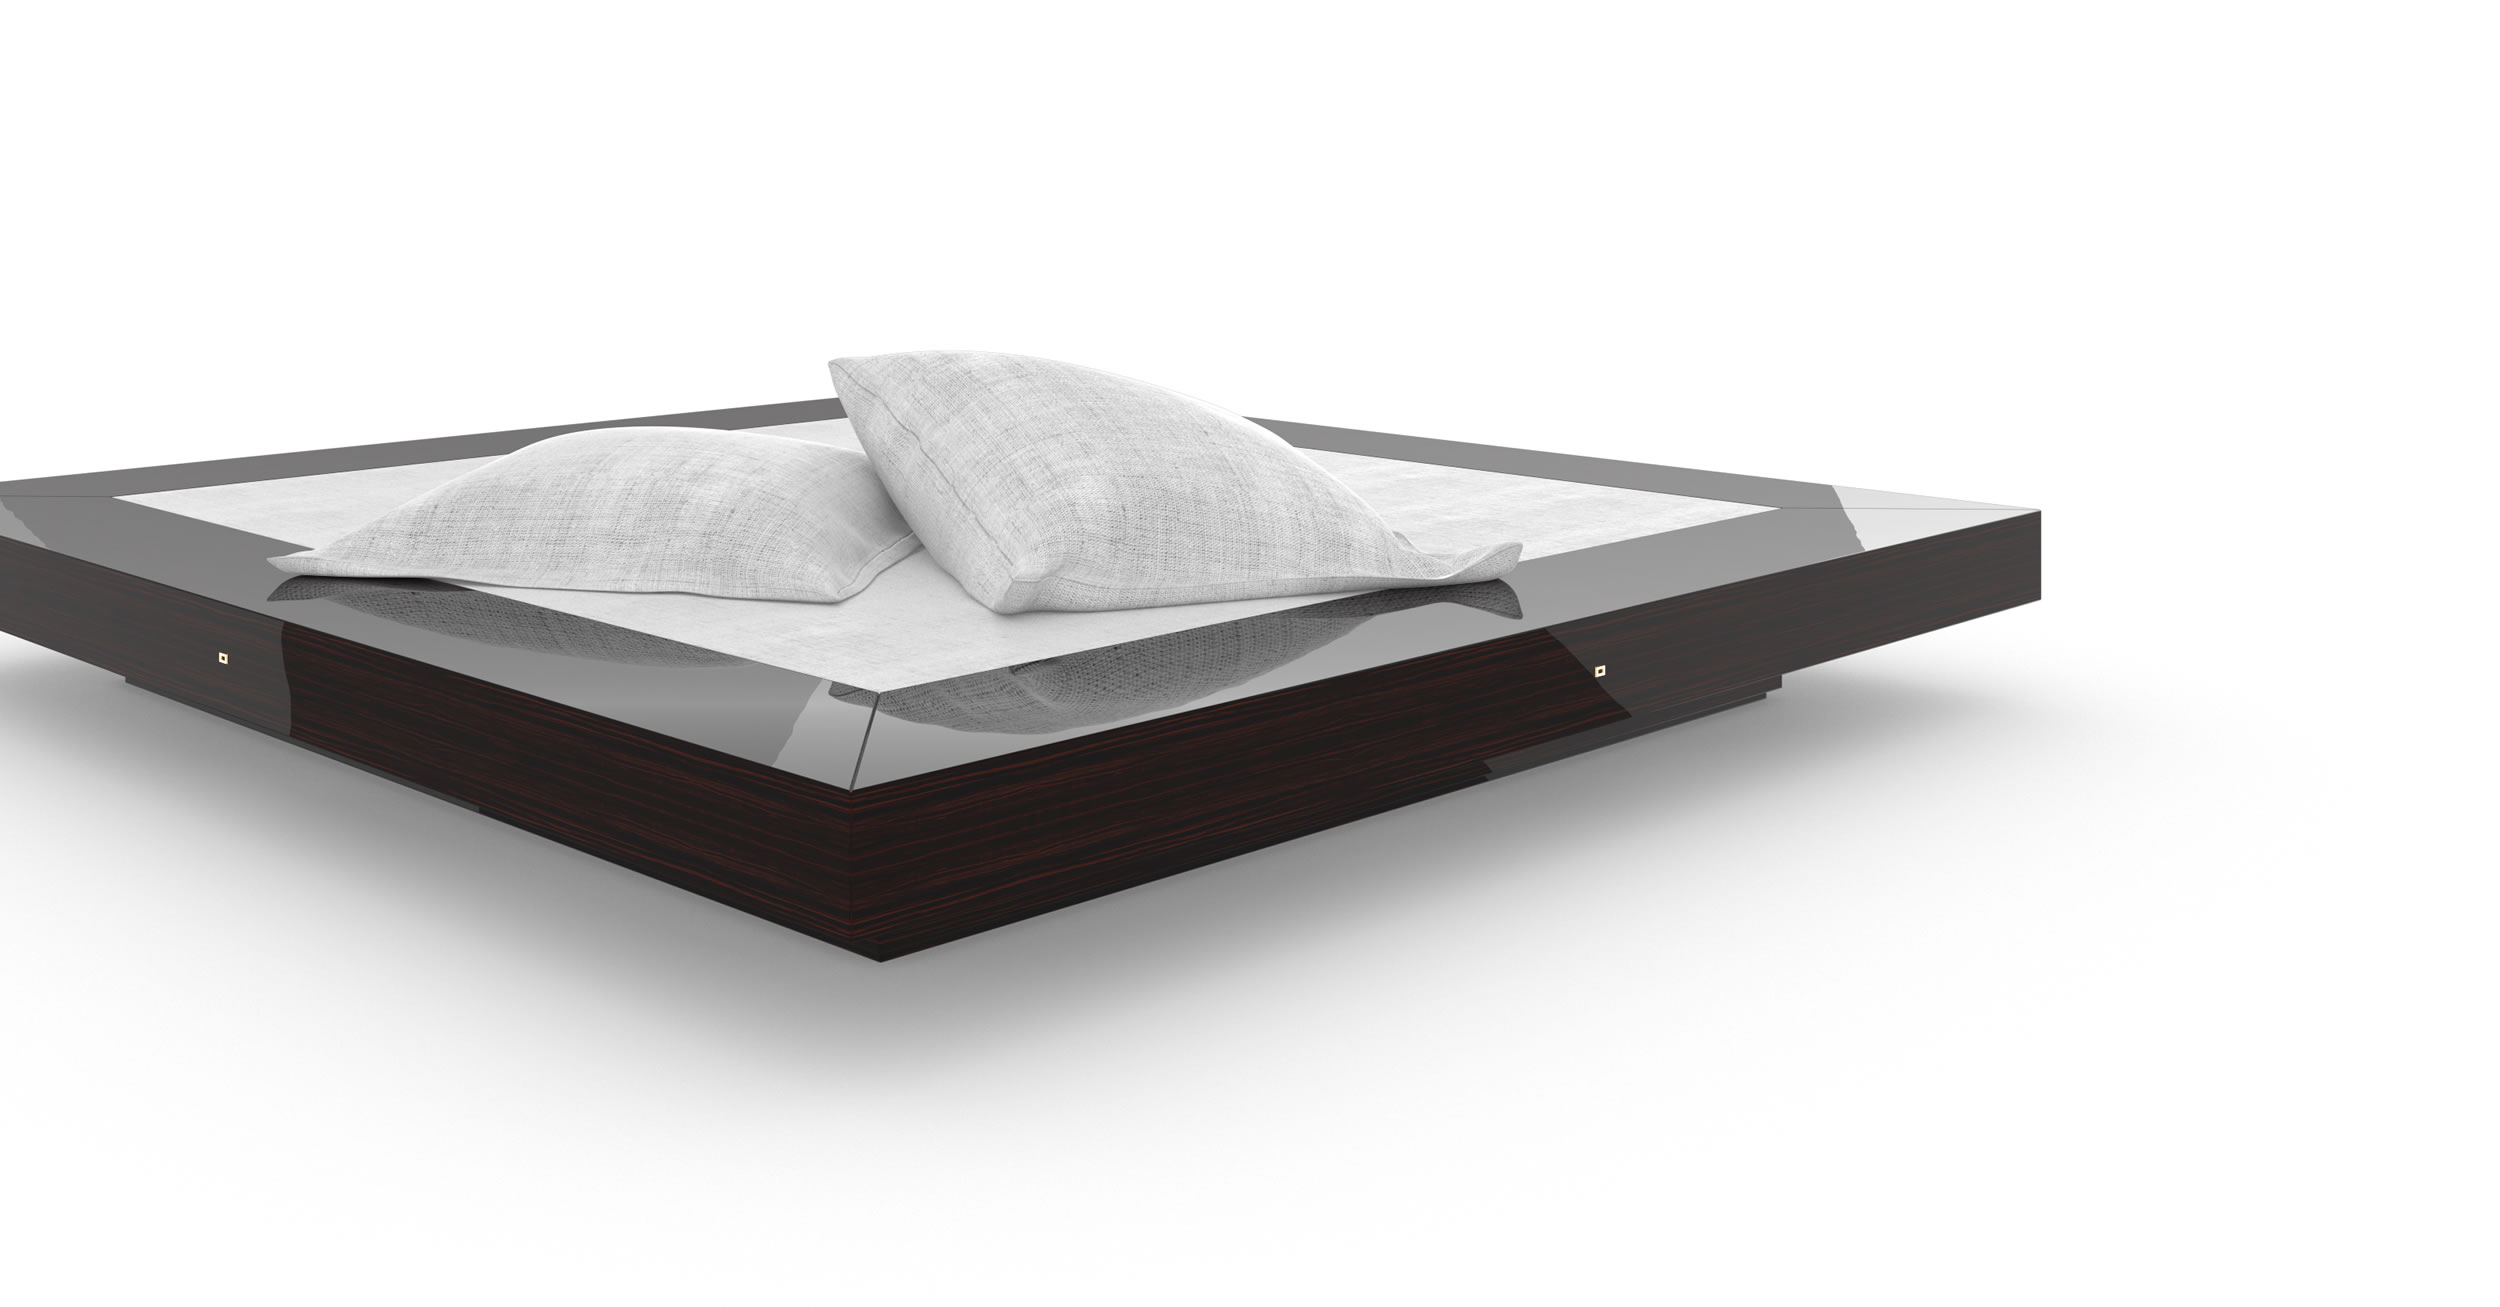 Design Bed Handcrafted Makassar Ebony Design Unique Purist Luxury InteriorFELIX SCHWAKE